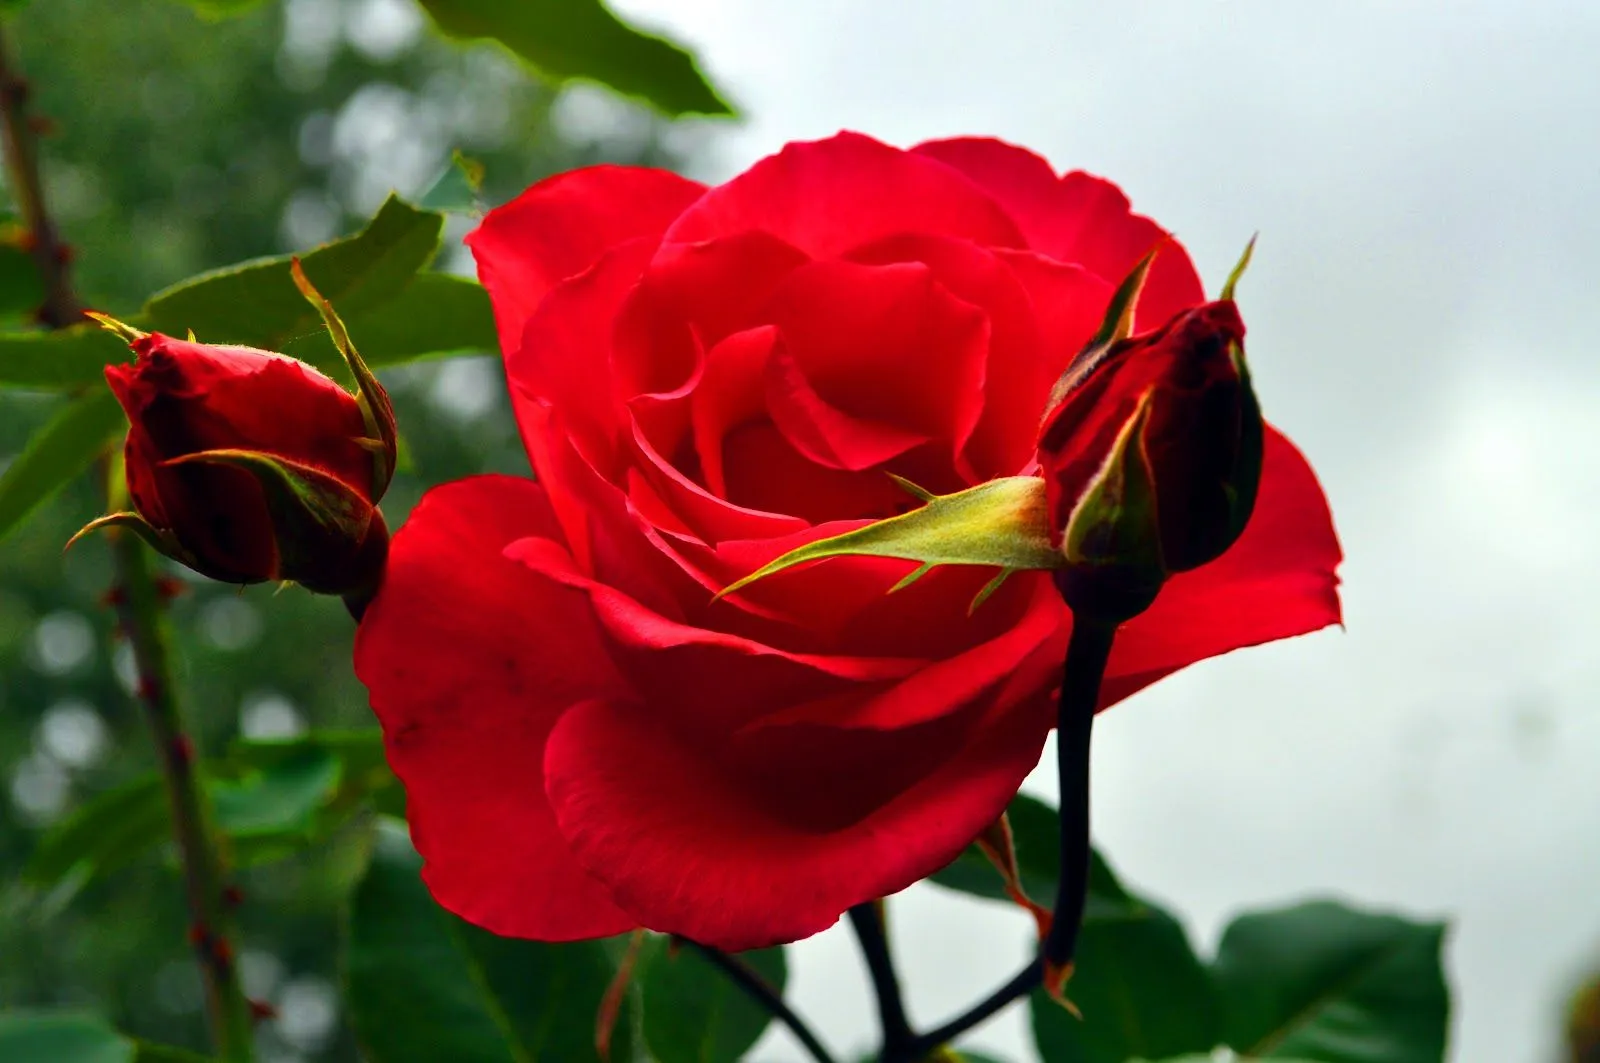 Nico Salas: Rosas en mi jardin